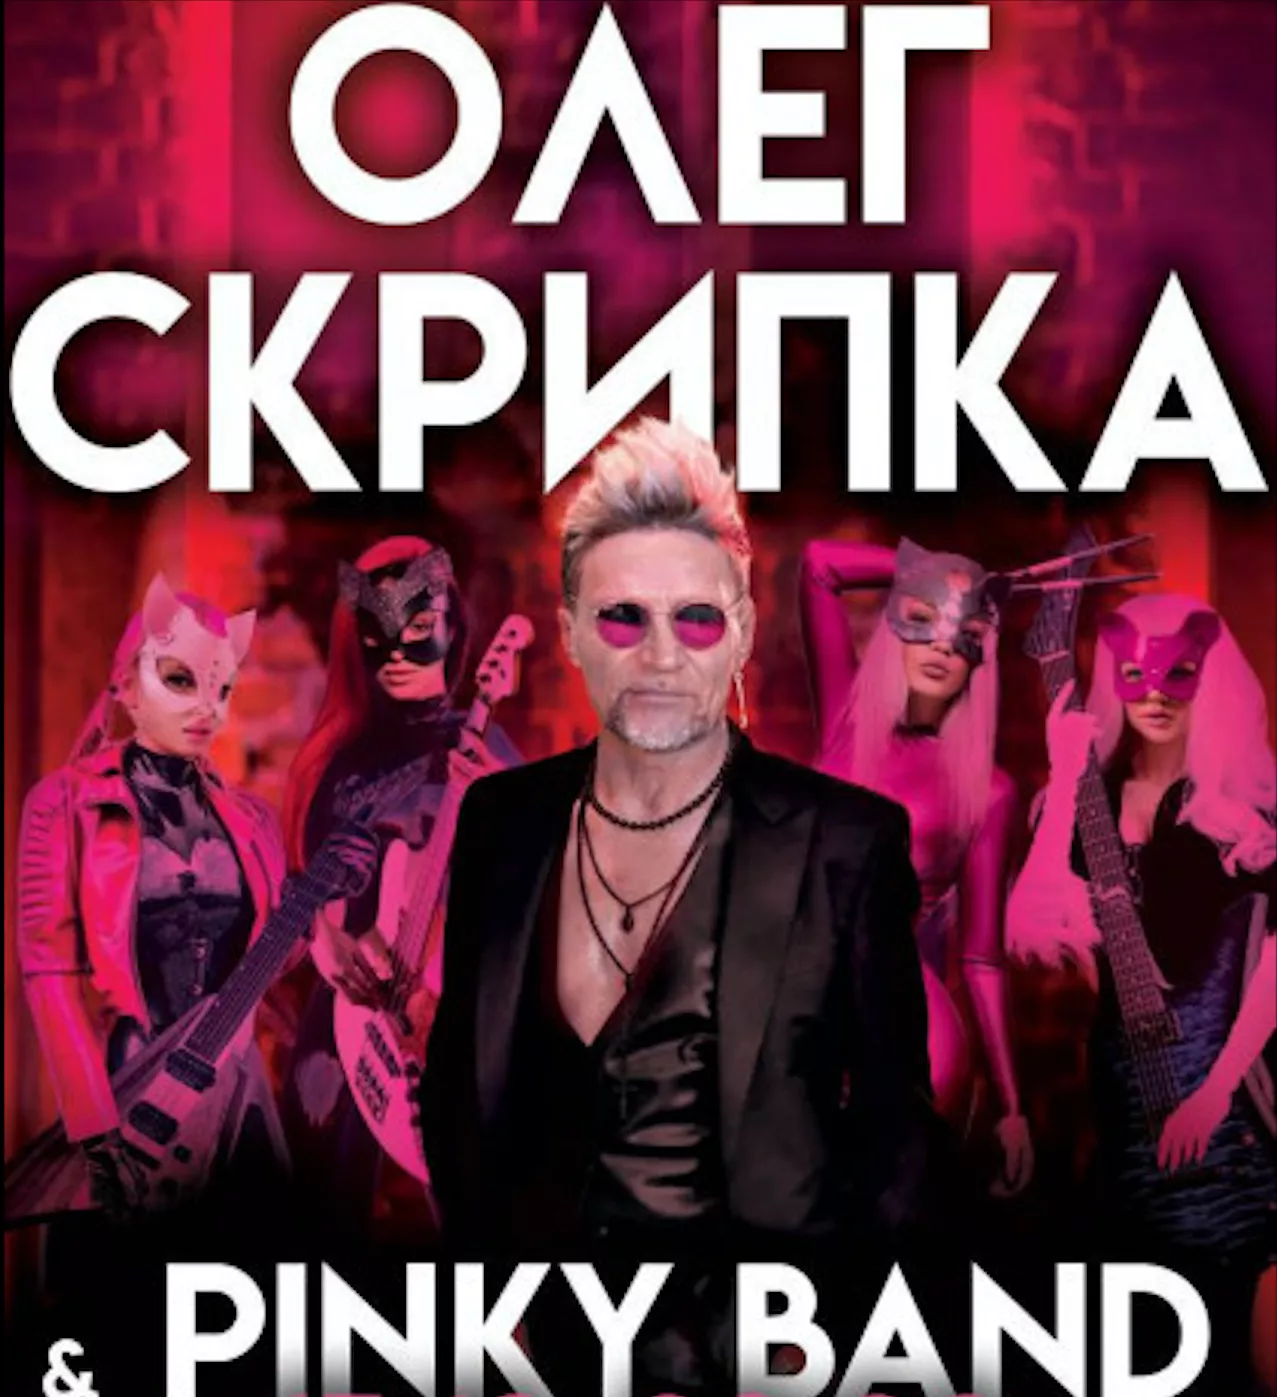 Концерт исполнителя Олега Скрипки и женского рок-бэнда Pinky Band